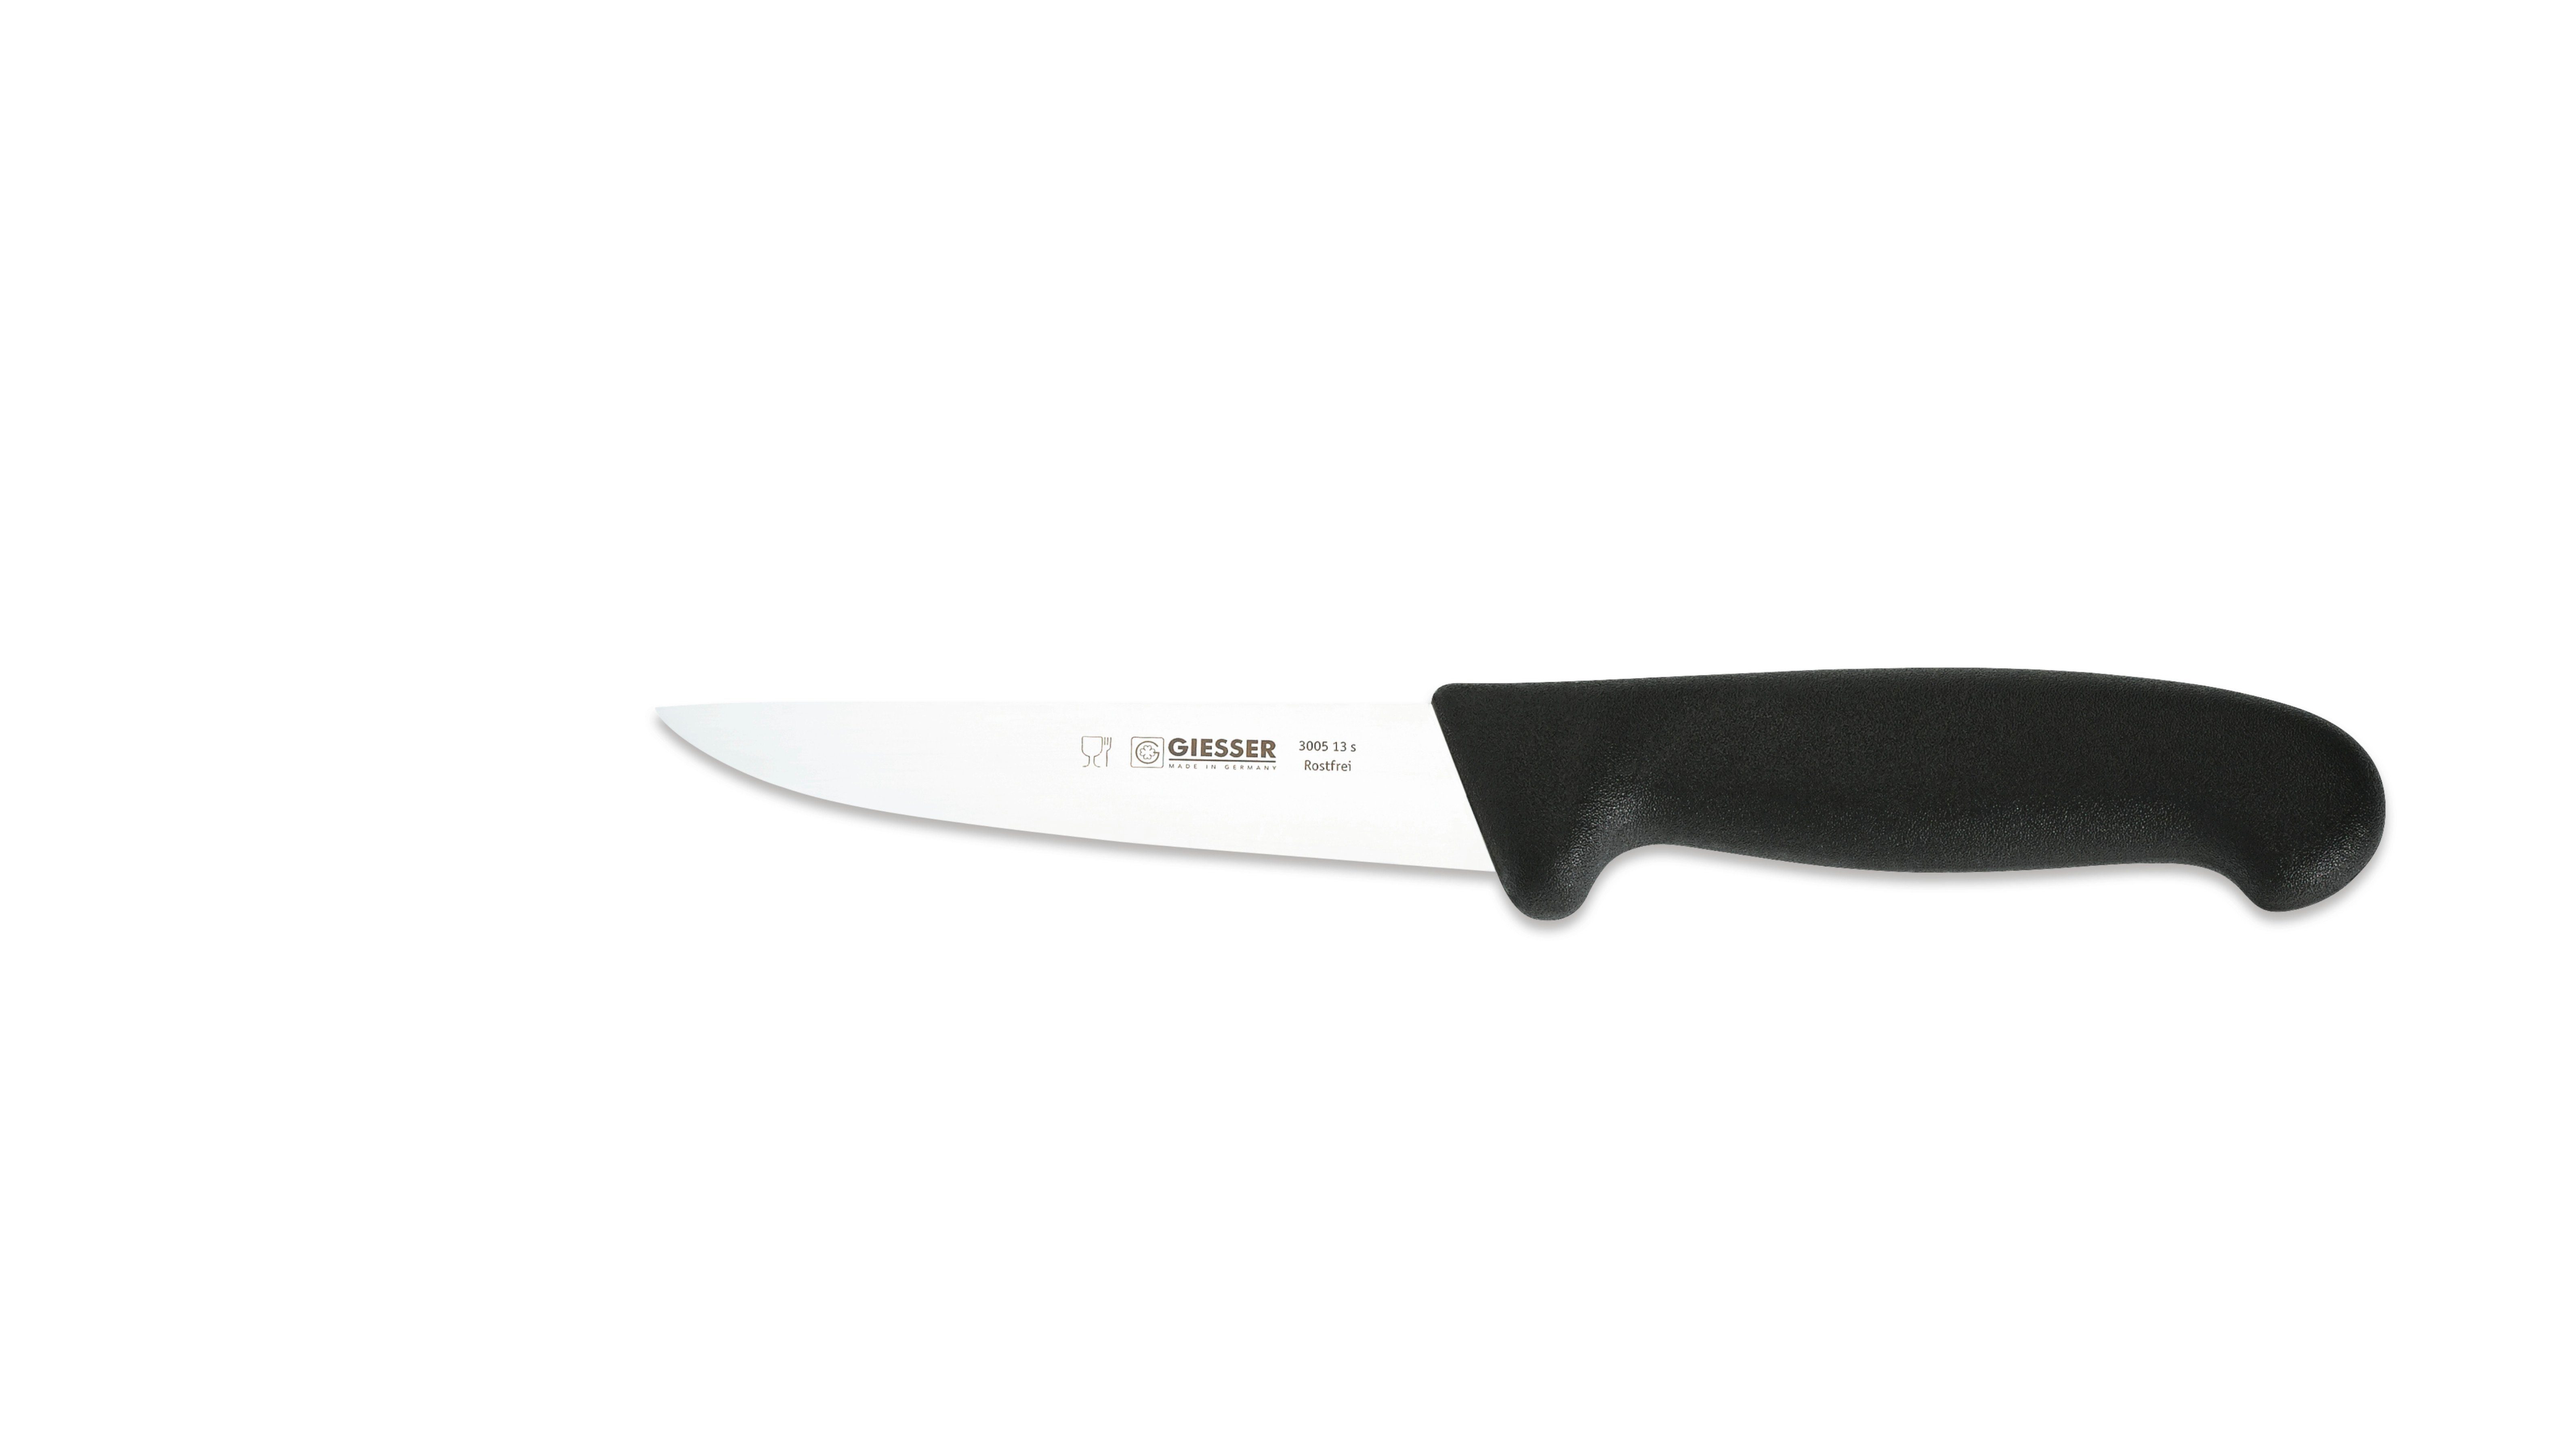 Giesser Messer Ausbeinmesser Stechmesser 3005 13-30, starke, gerade Klinge, Ideal für Fleischer Schwarz